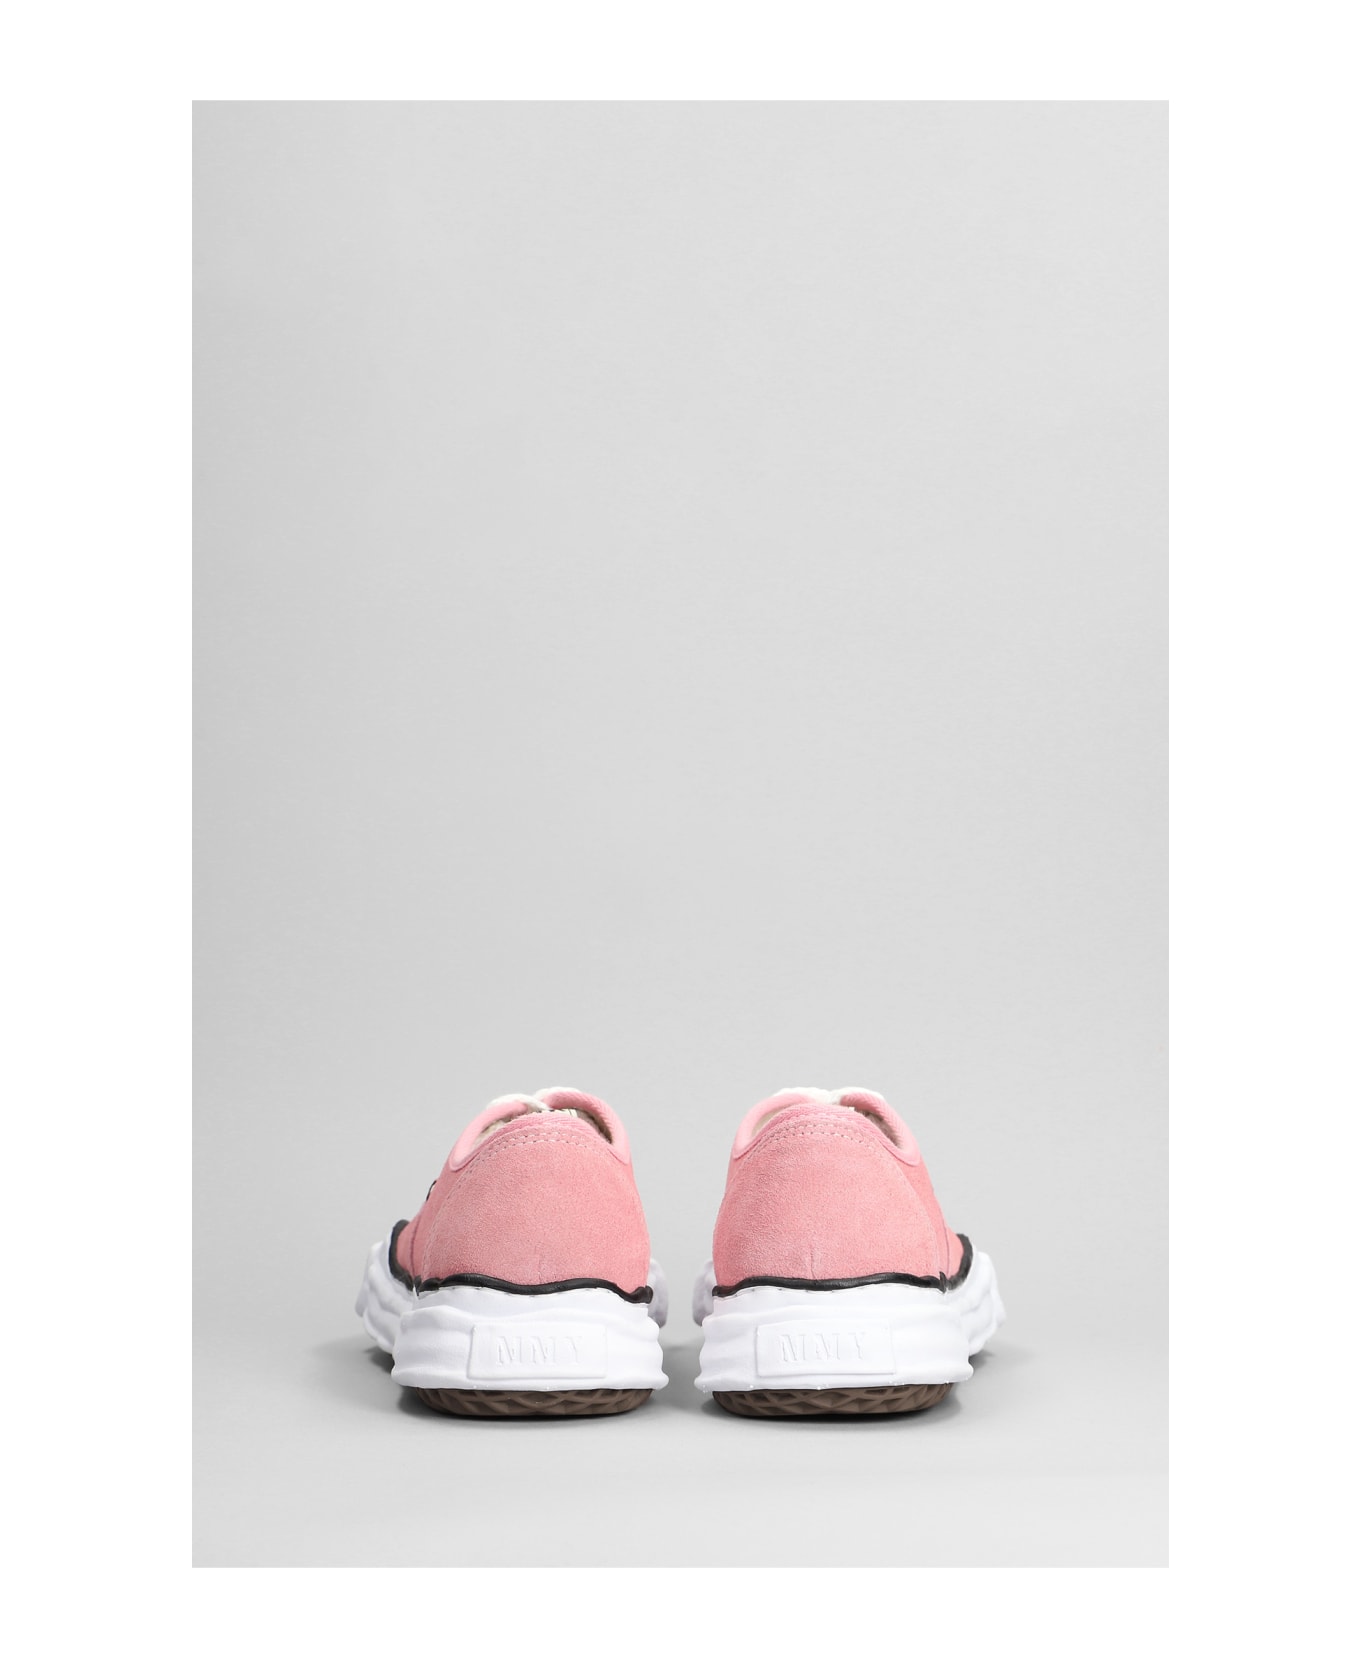 Mihara Yasuhiro Baker Sneakers In Rose-pink Suede - rose-pink